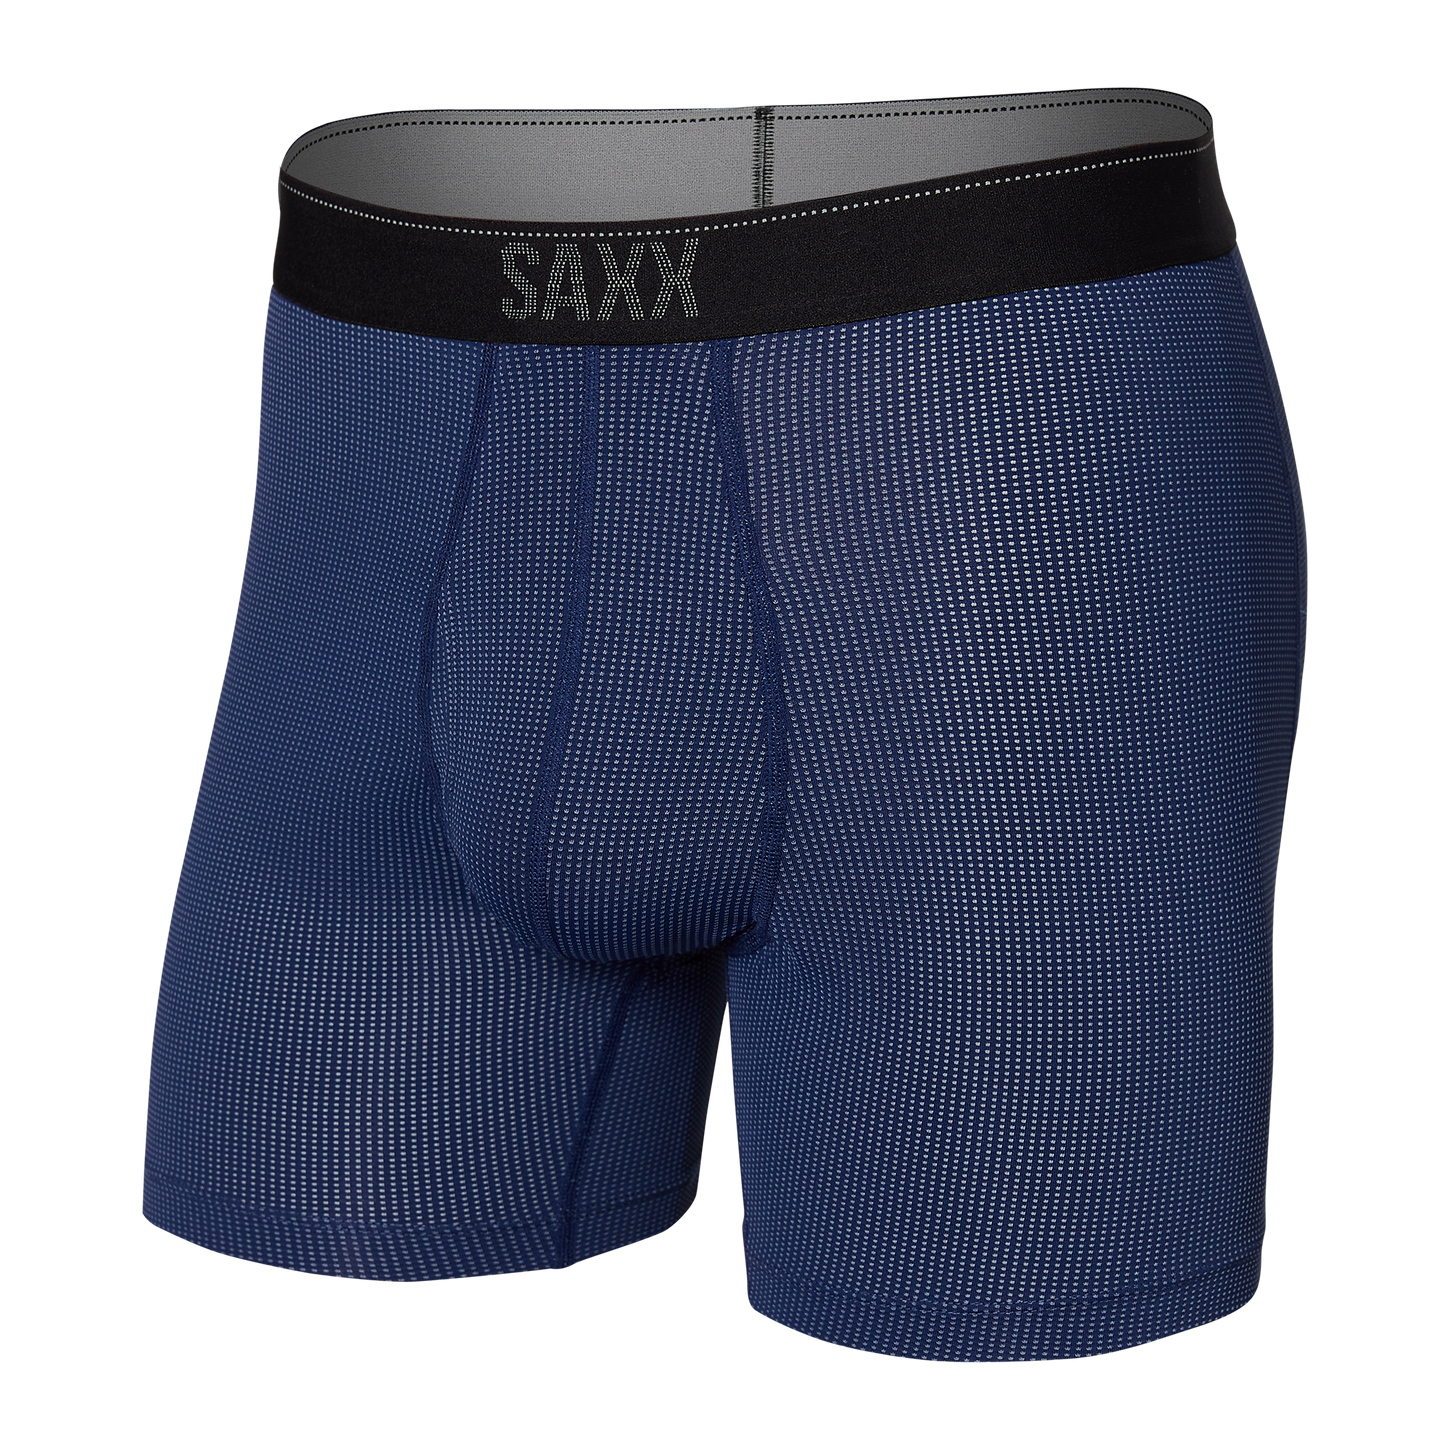 Saxx Men's Quest Boxer Brief Apparel SAXX Midnight Blue II Small 